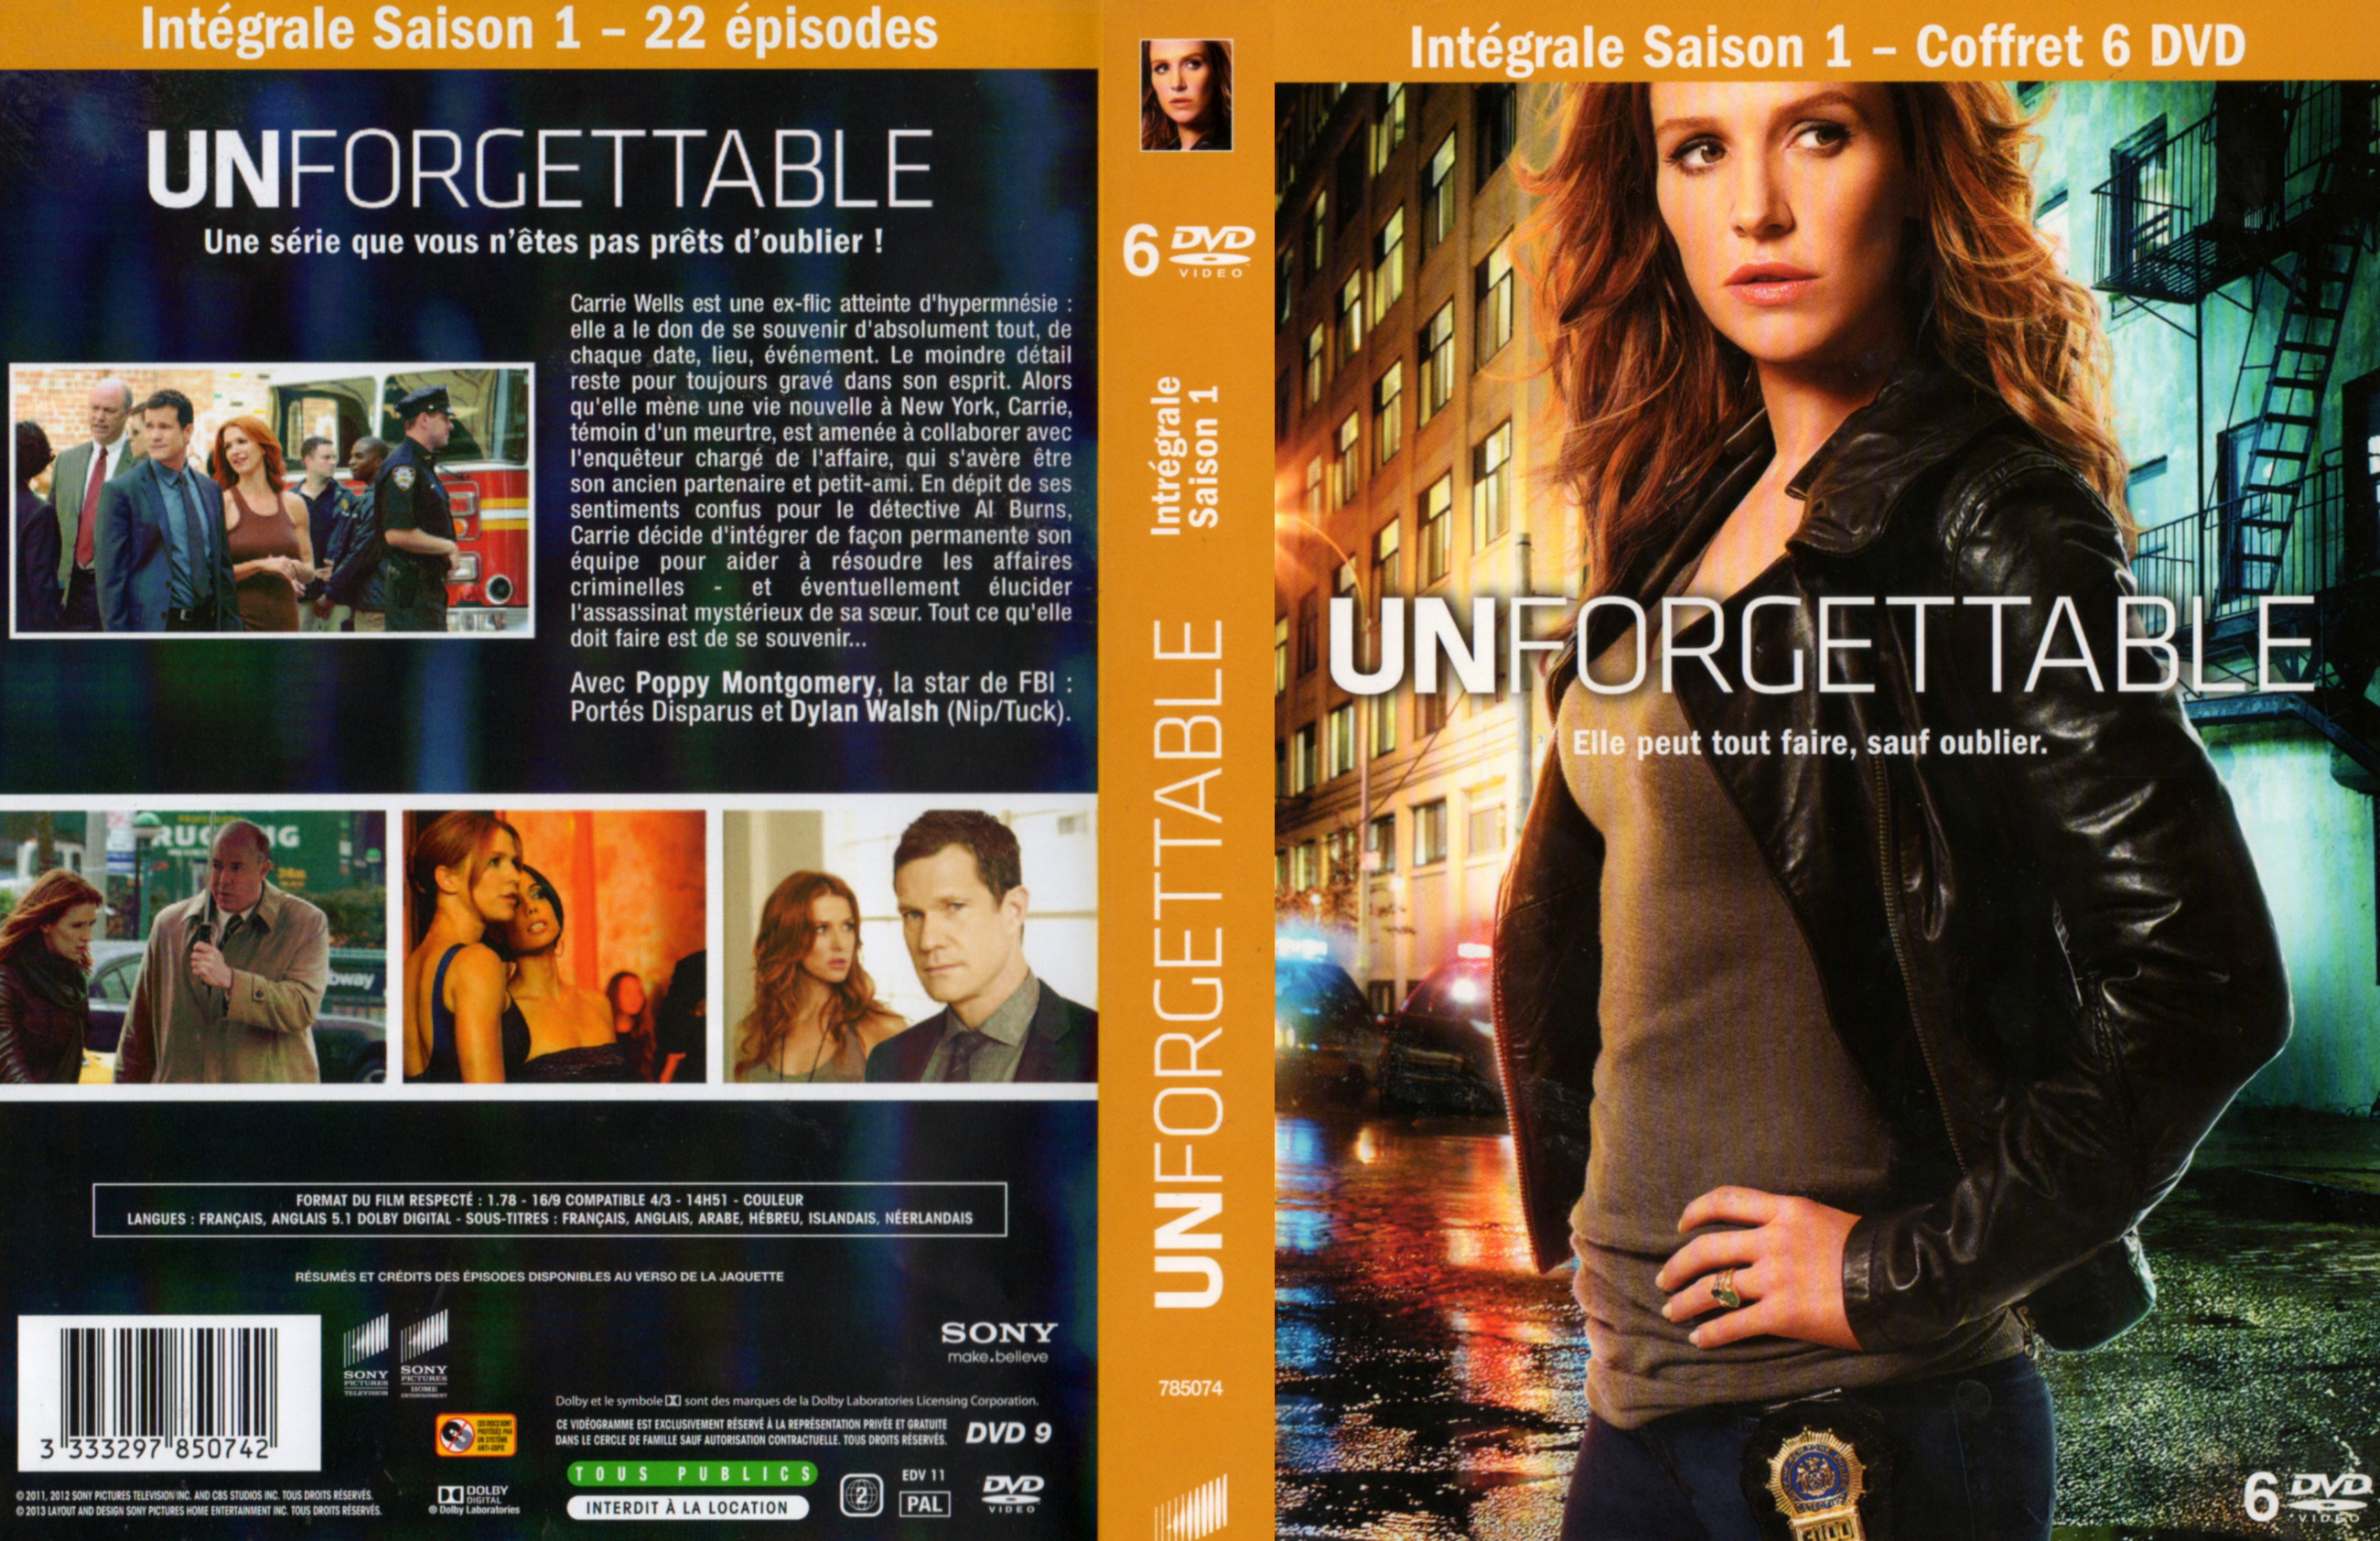 Jaquette DVD Unforgettable Saison 1 COFFRET